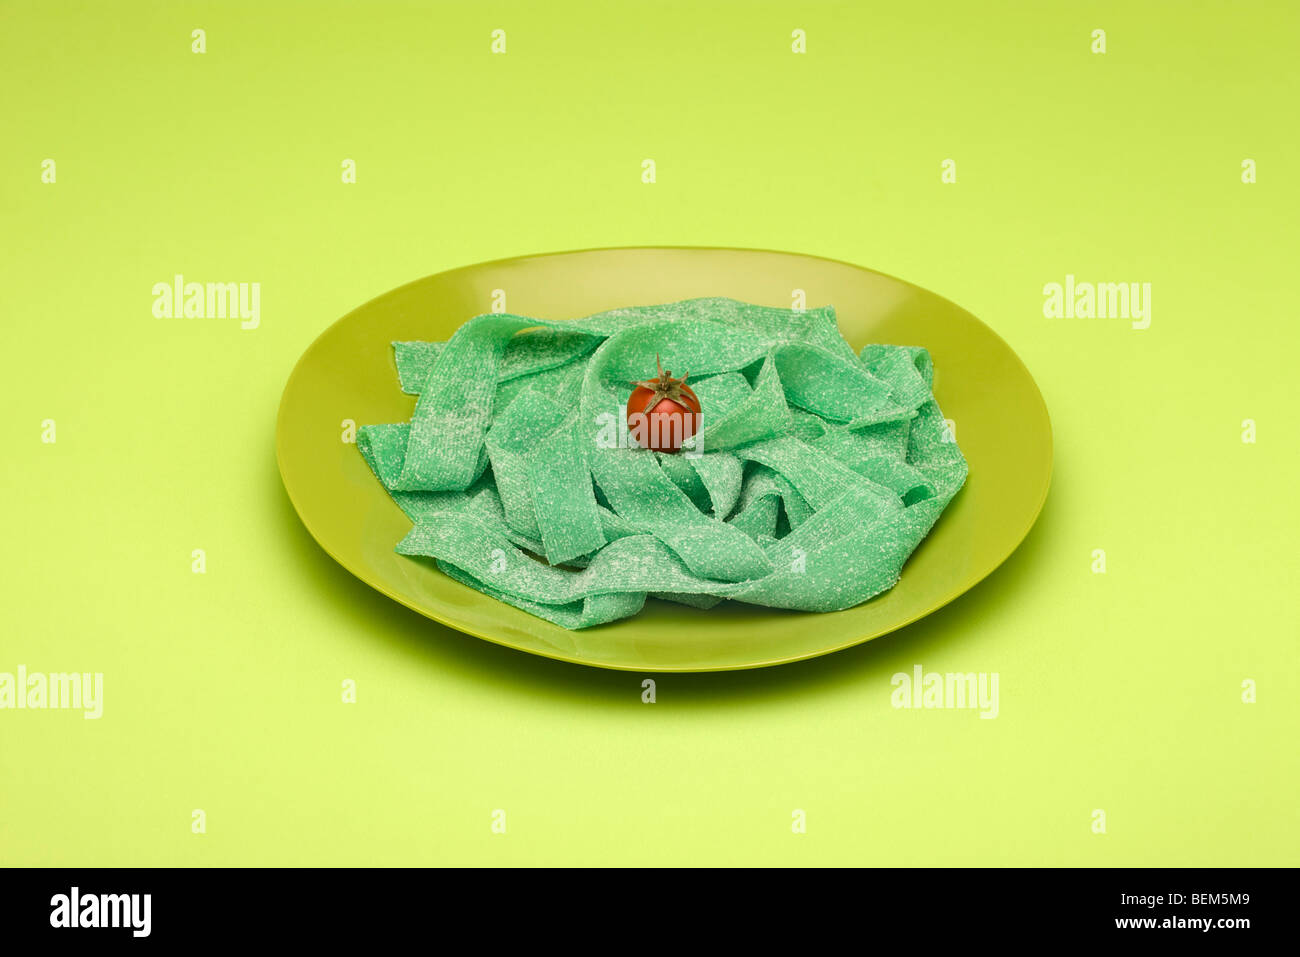 Concept de l'alimentation, de la plaque de vert gummy candy organisé comme les pâtes surmontées de tomate cerise Banque D'Images